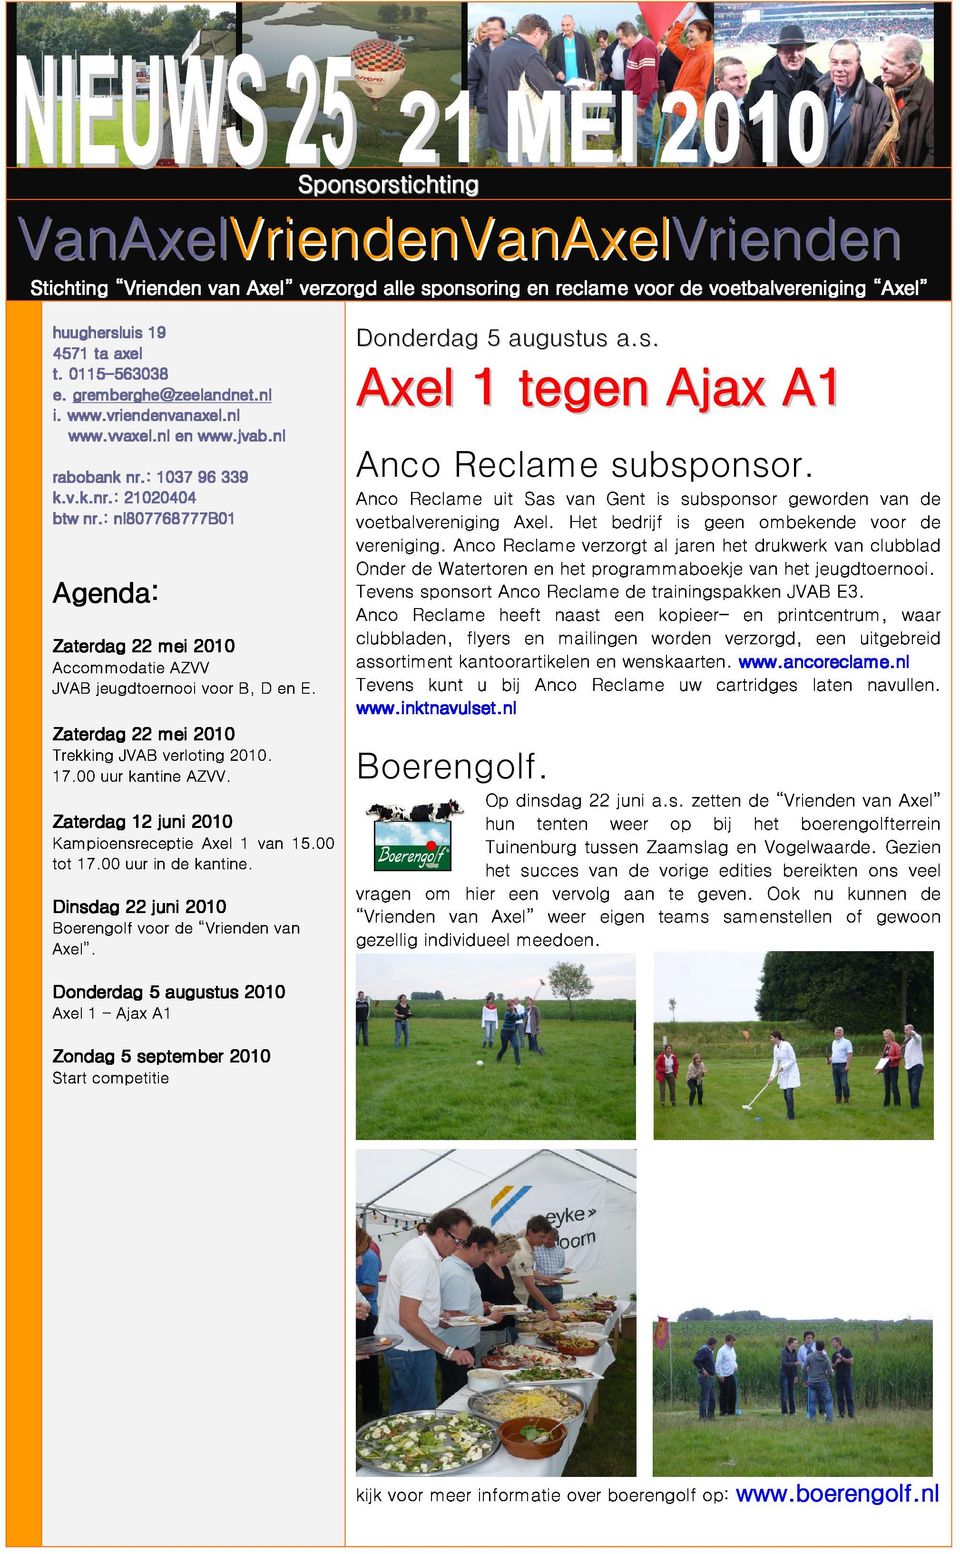 : nl807768777b01 Agenda: Zaterdag 22 mei mei 2010 Accommodatie AZVV JVAB jeugdtoernooi voor B, D en E. Anco Reclame subsponsor.